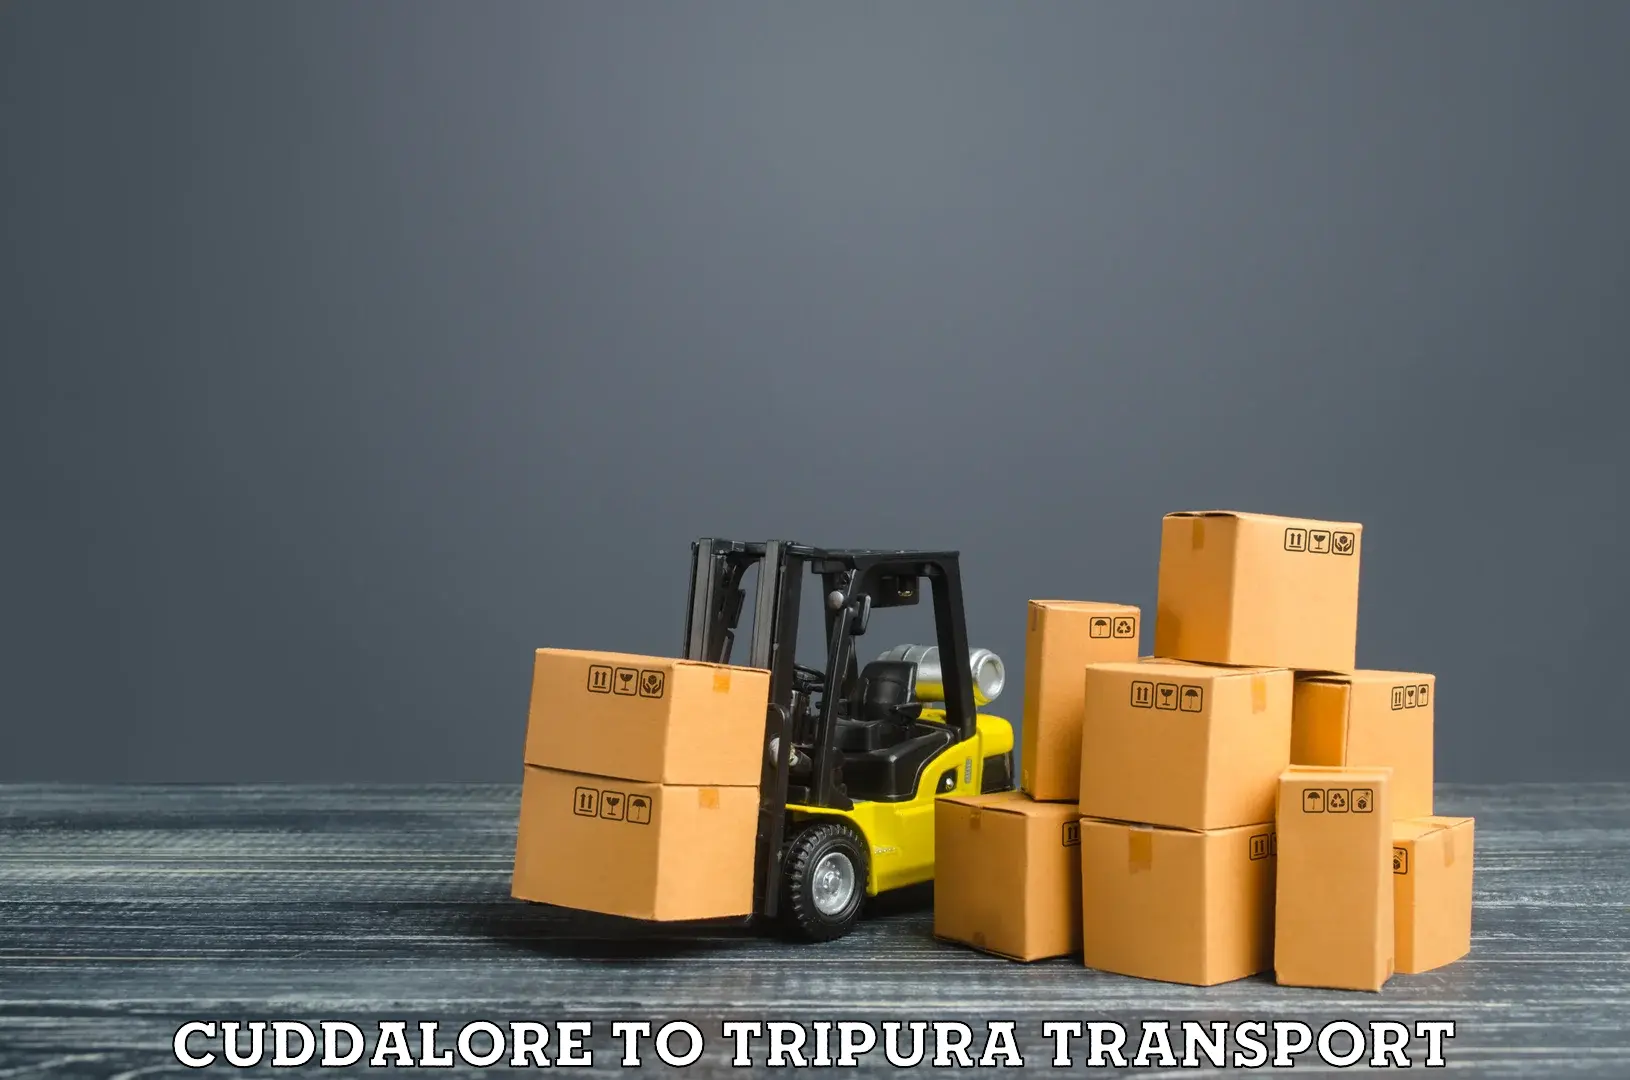 Furniture transport service in Cuddalore to Tripura